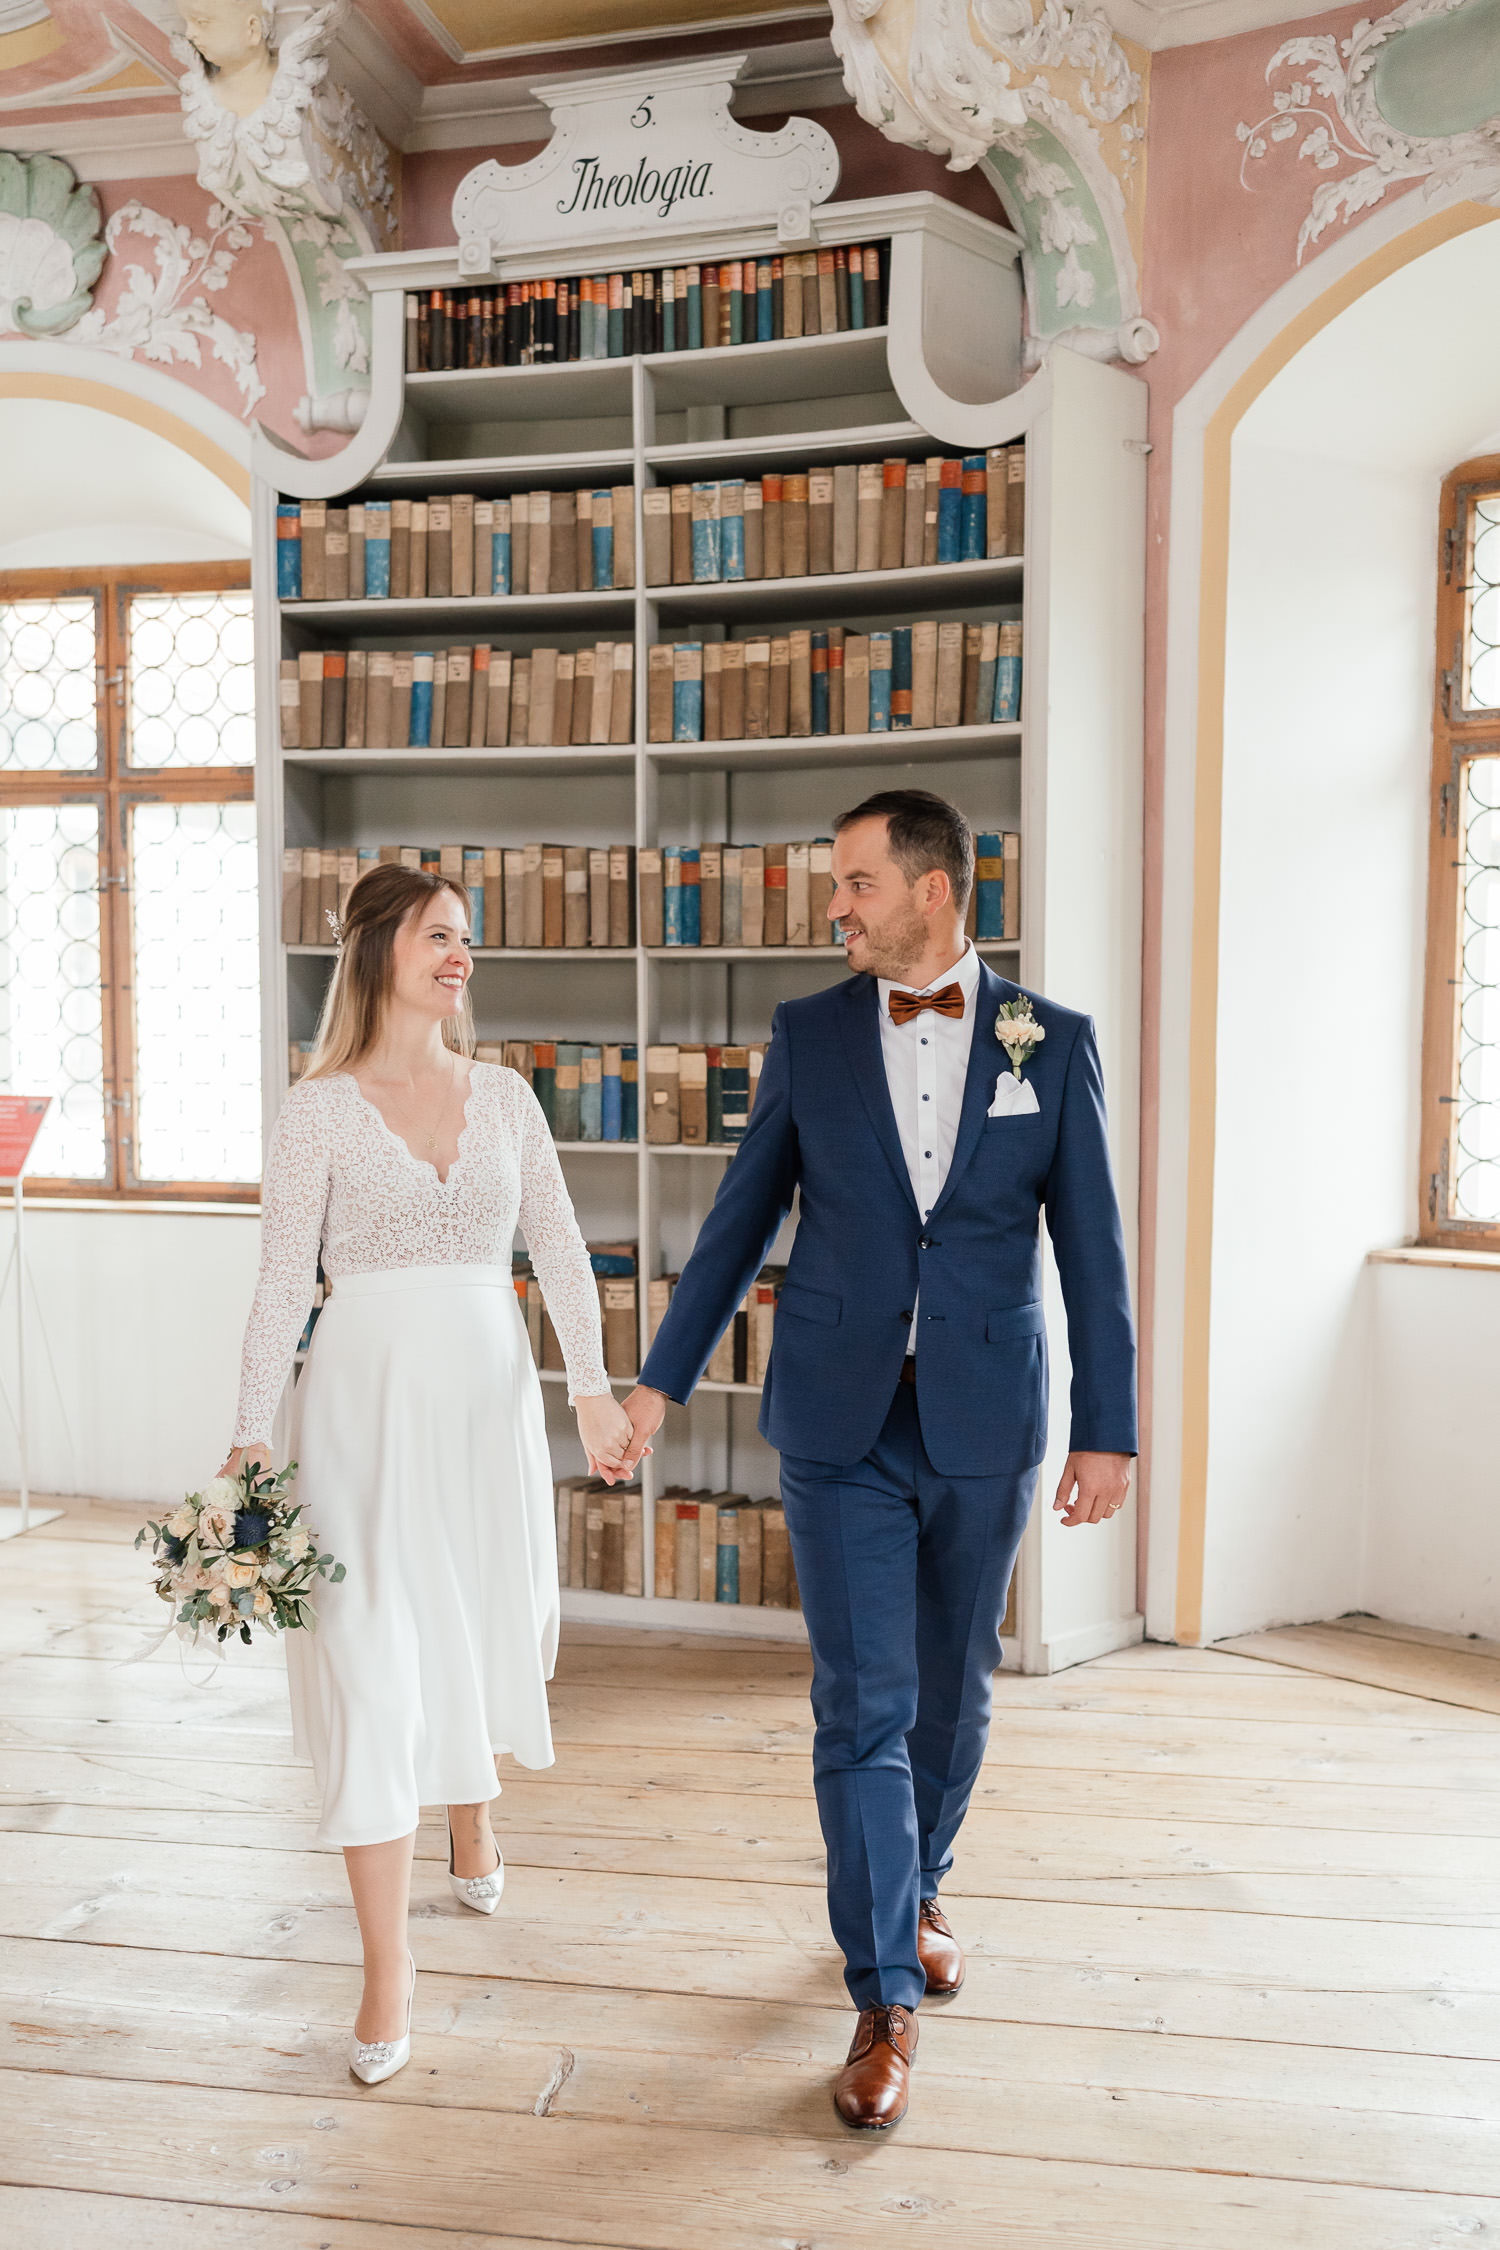 Brautpaarshooting in der historischen Klosterbibliothek